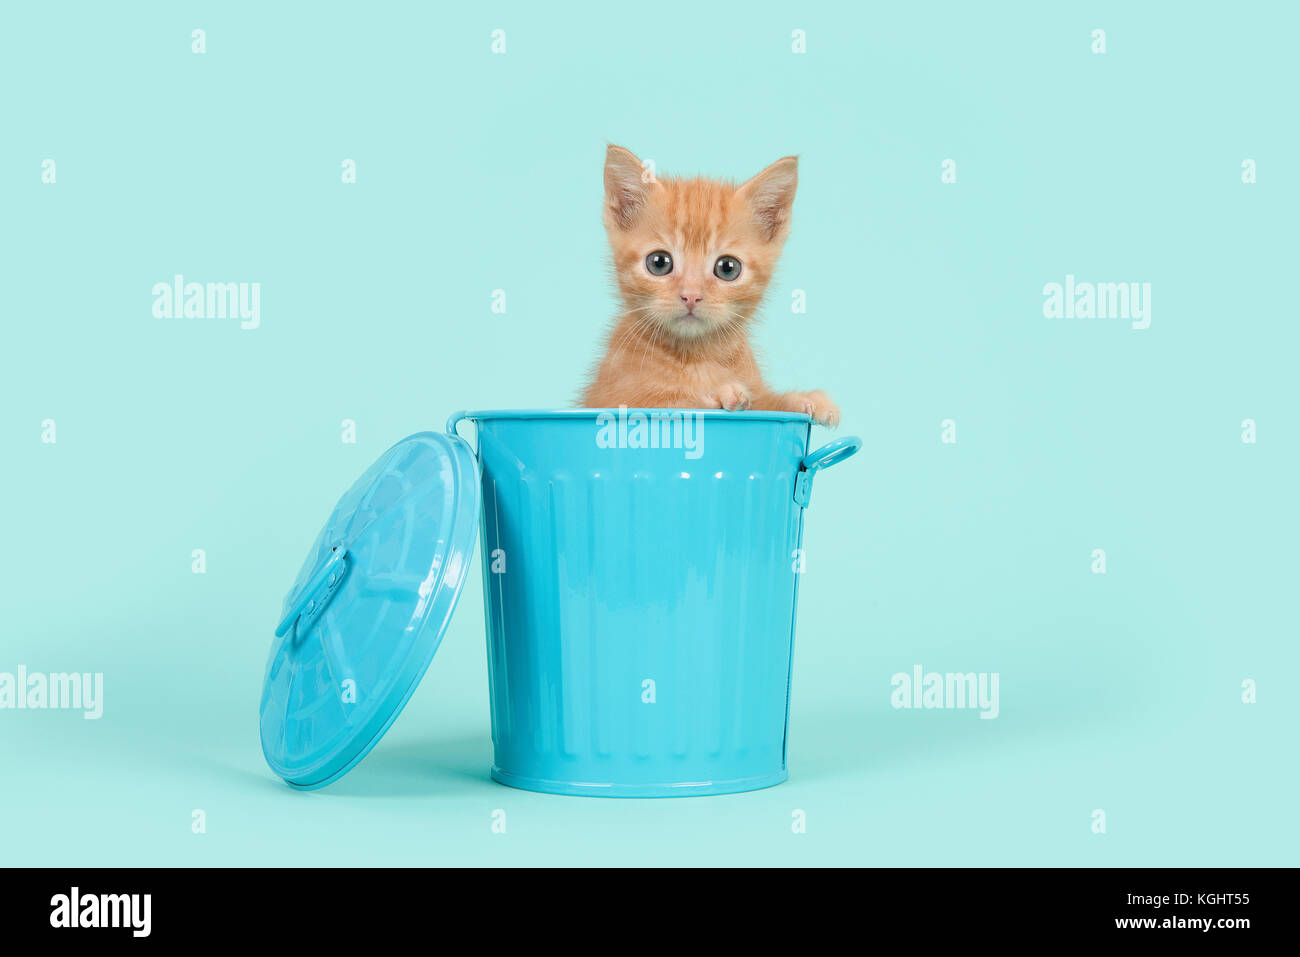 Red ginger 8 semaines vieux bébé chat dans une poubelle bleue sur un fond bleu turquoise Banque D'Images